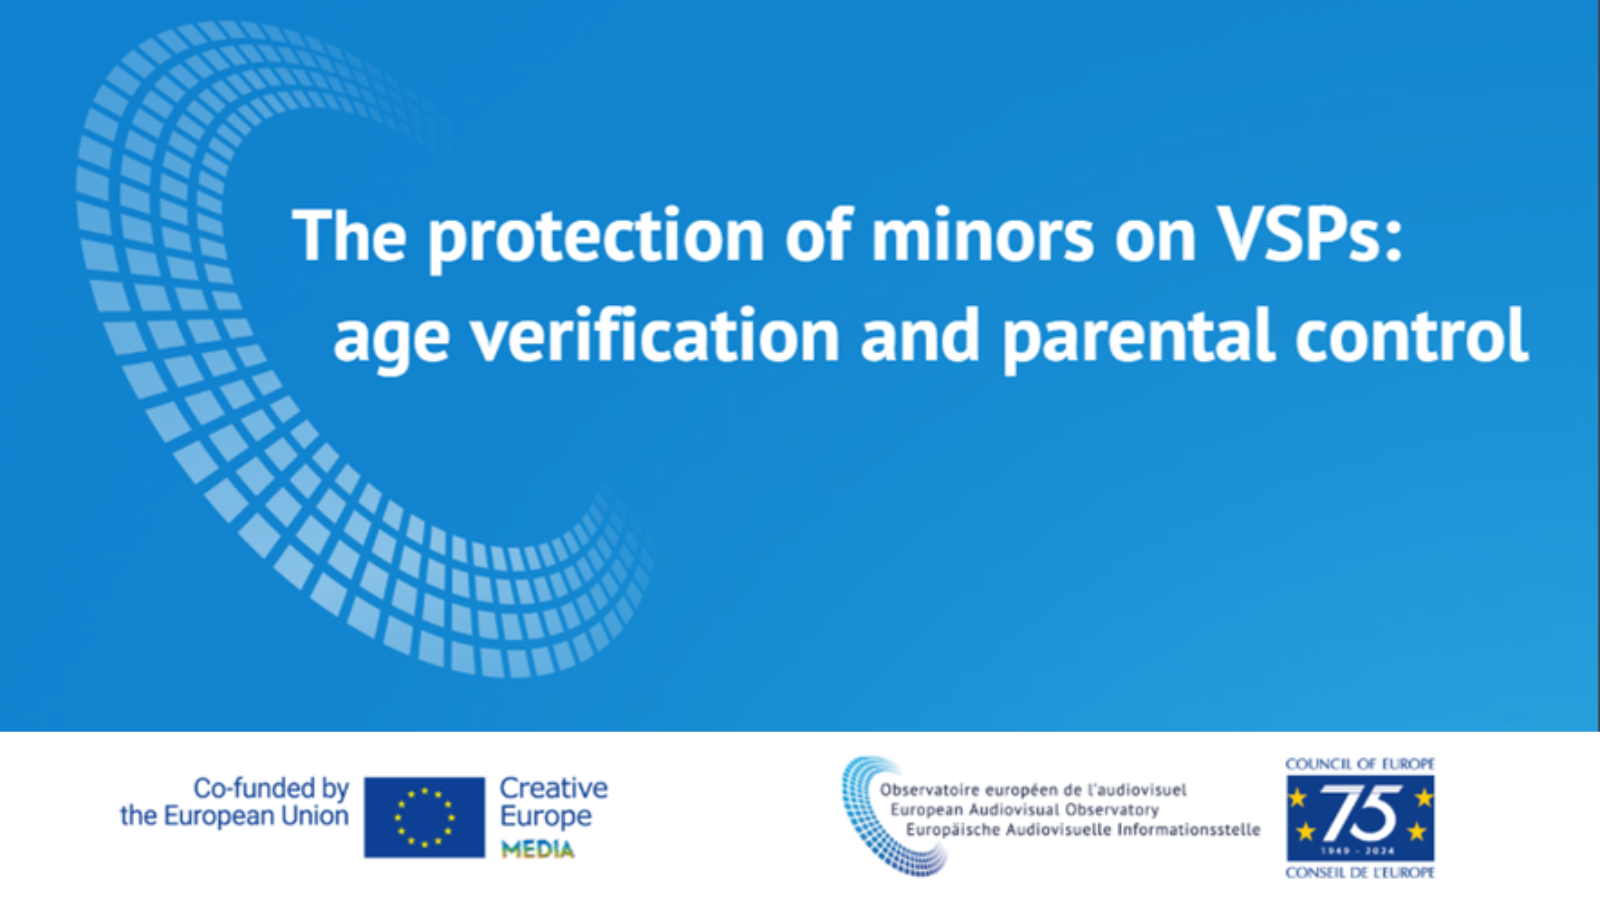 La protecció dels menors a les plataformes de vídeo compartit (VSPs): verificació d'edat i control parental